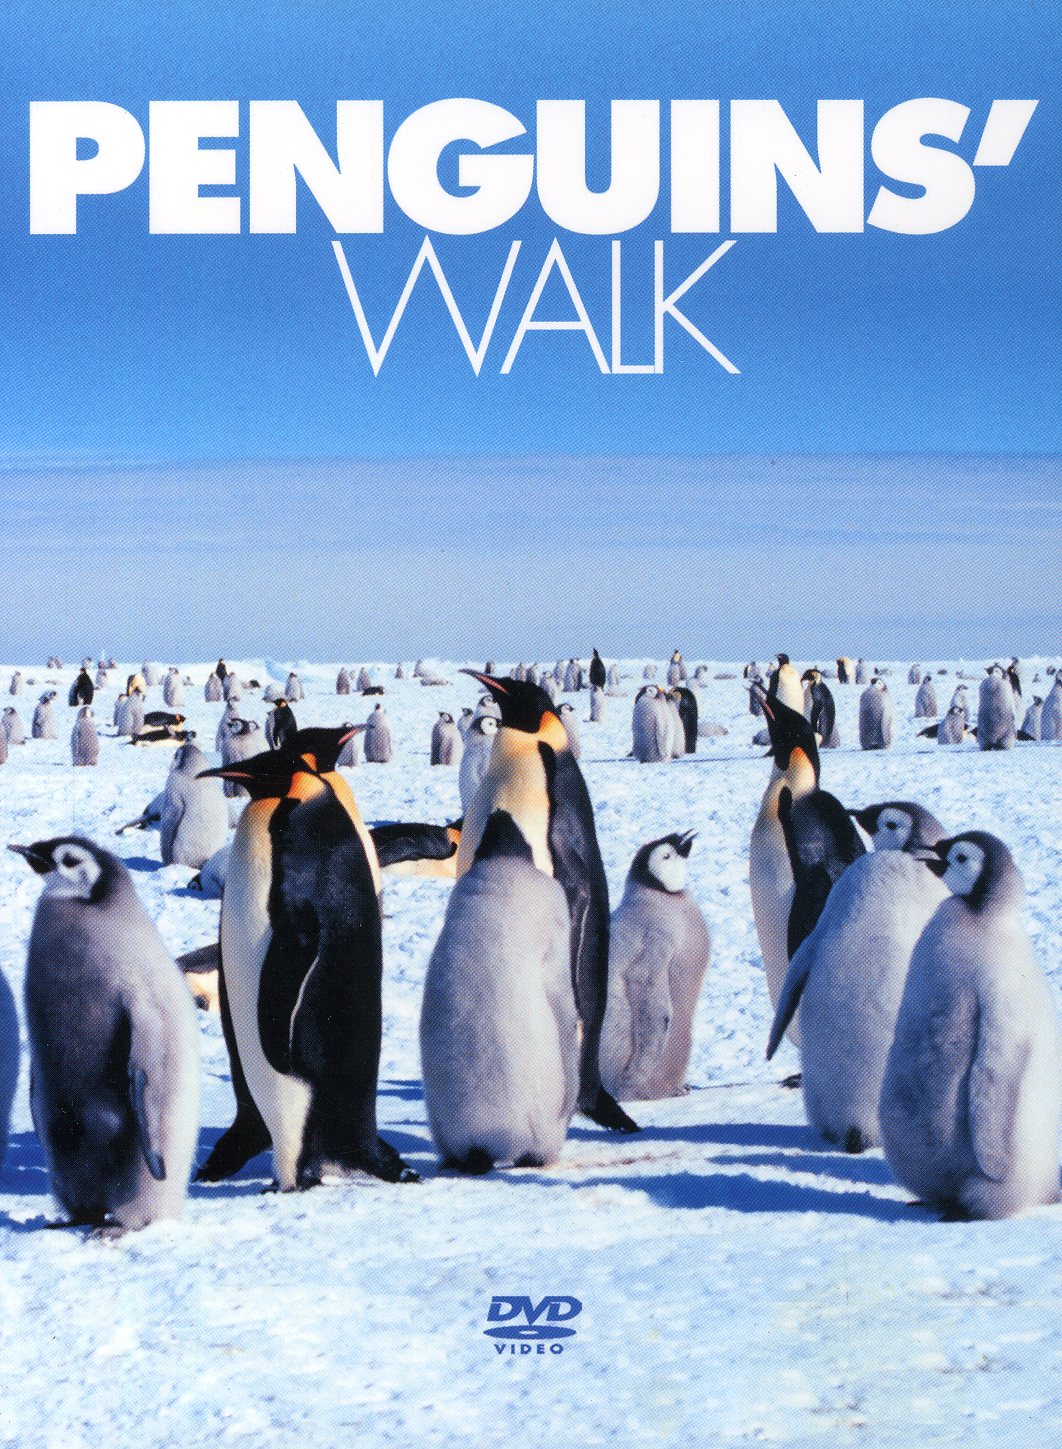 PENGUINS WALK